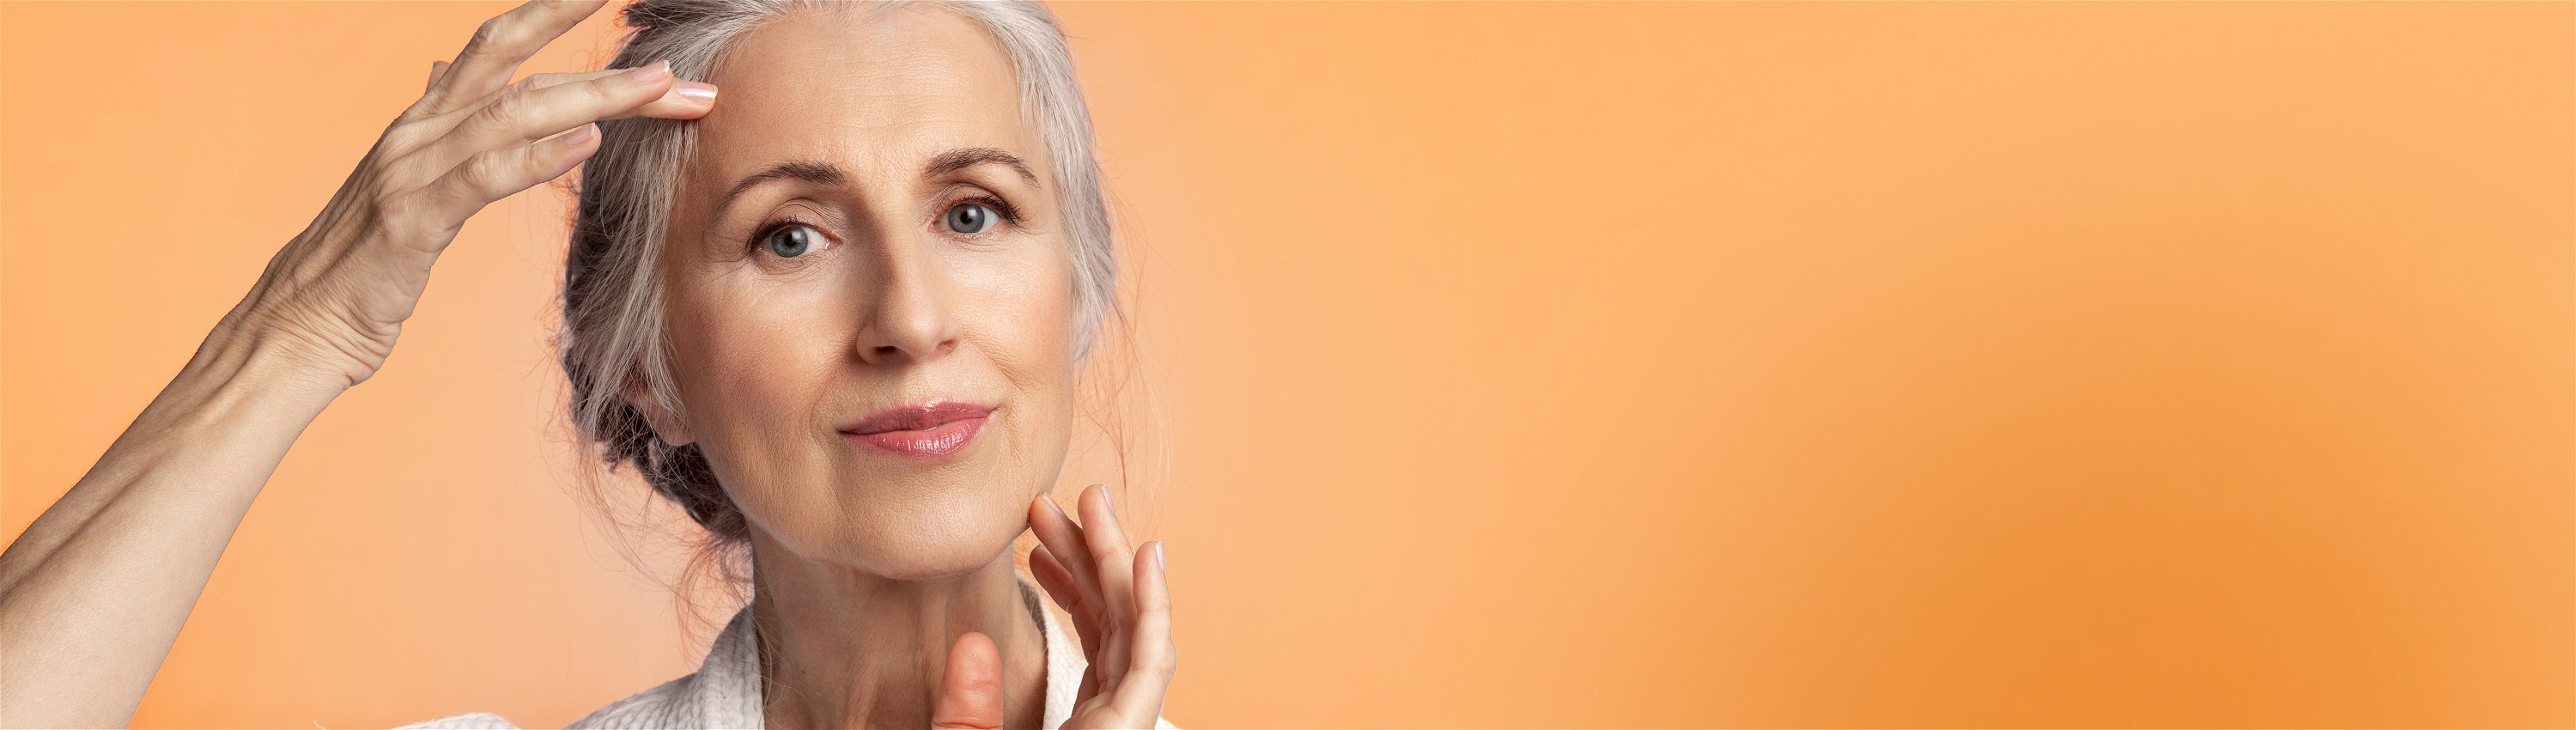 Grauhaarige Frau im Anti-Aging-Alter